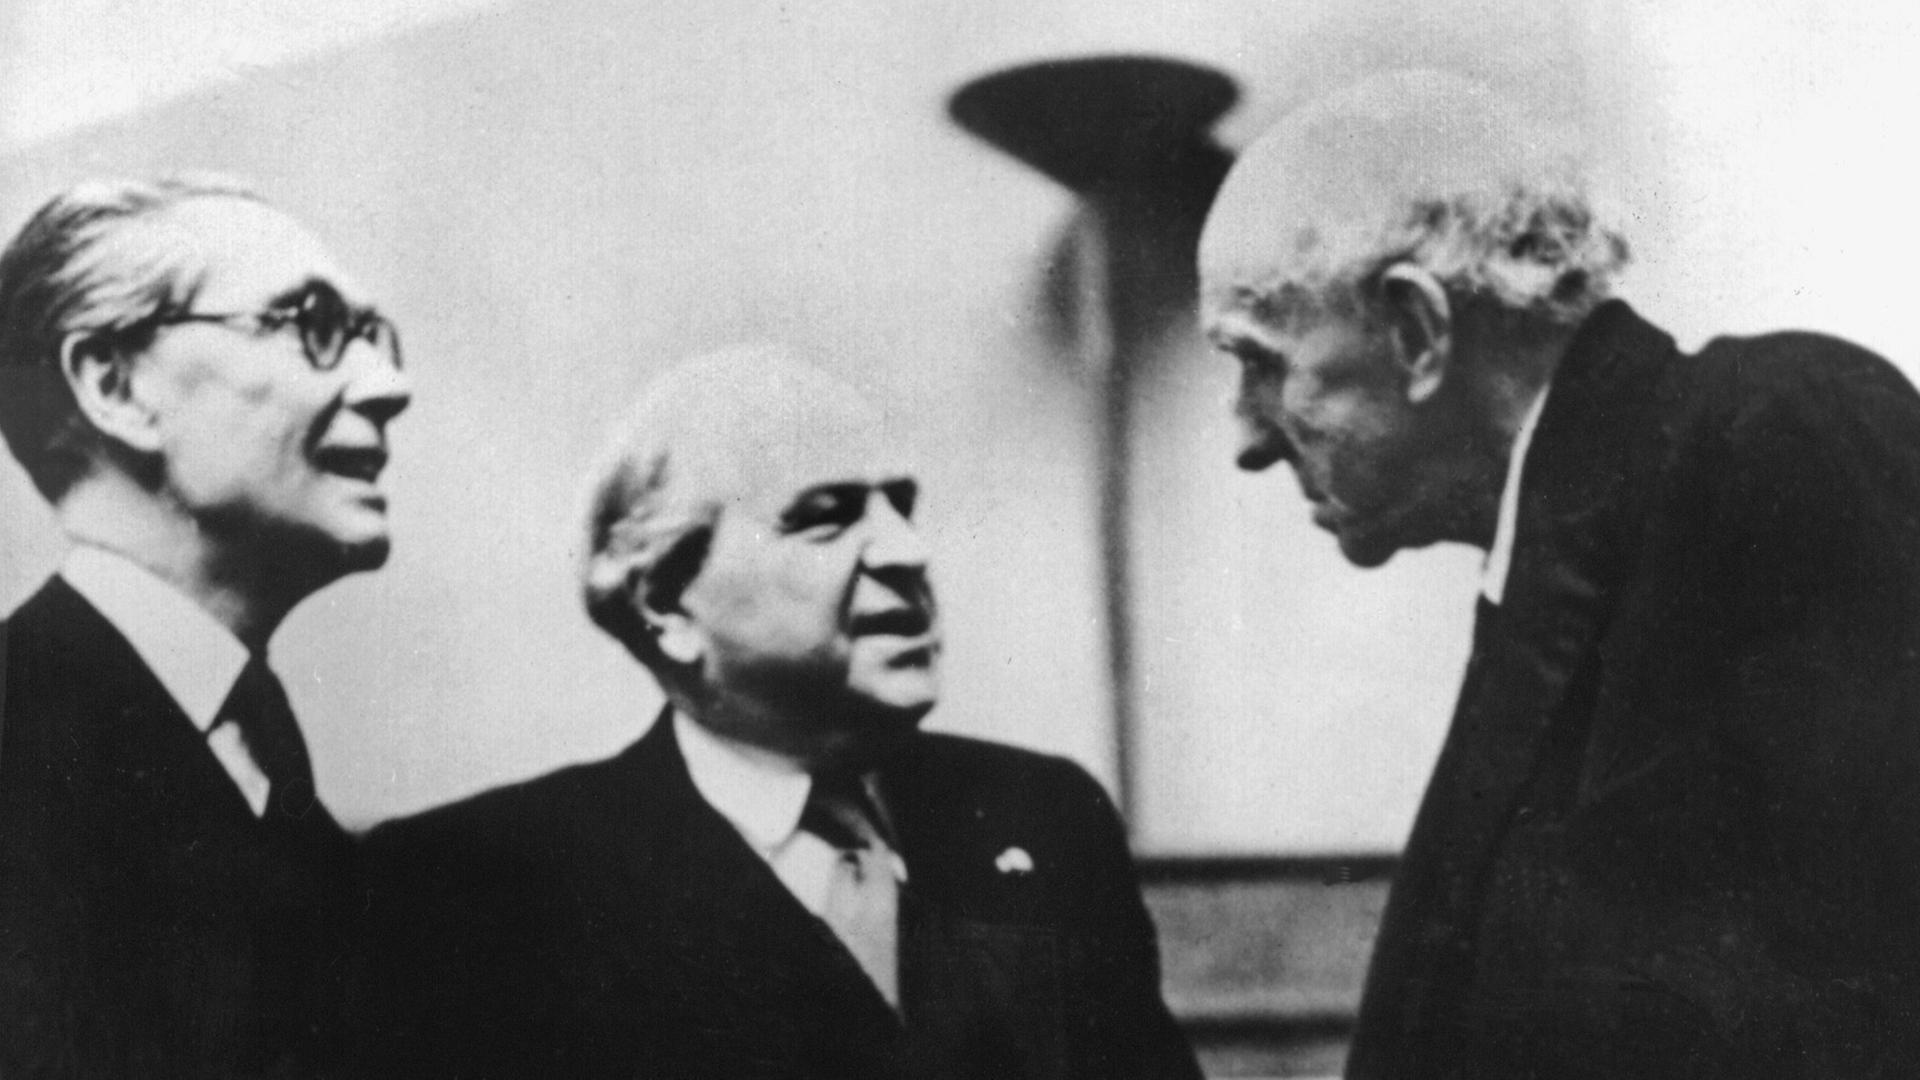 Der britische Staatsminister Philip John Noel-Baker (L.), der norwegische Politiker Carl Joachim Hambro (M.) und Lord Edgar Algernon Robert Cecil (R.) während der letzten Sitzungsperiode des Völkerbundes am 12.4.1946 in Genf.